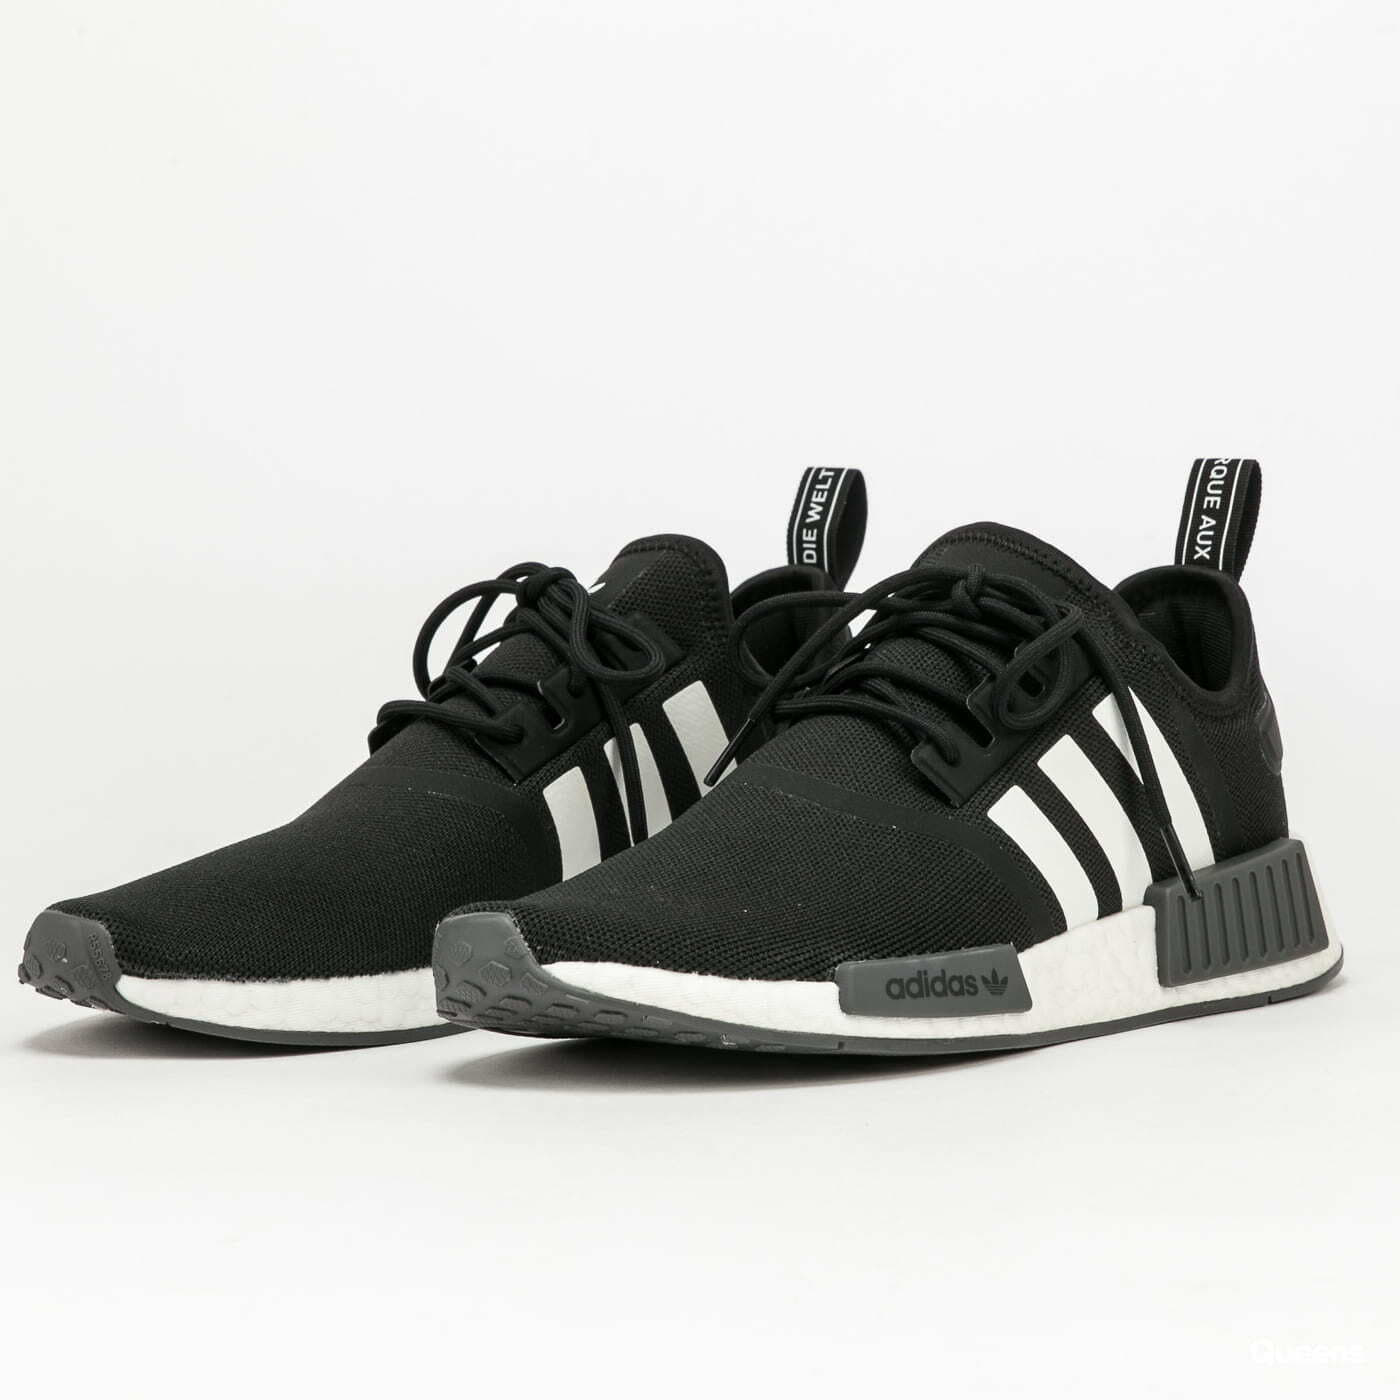 Men's shoes adidas Originals NMD_R1 Primeblue Core Balck/ Ftw White/ Core Black